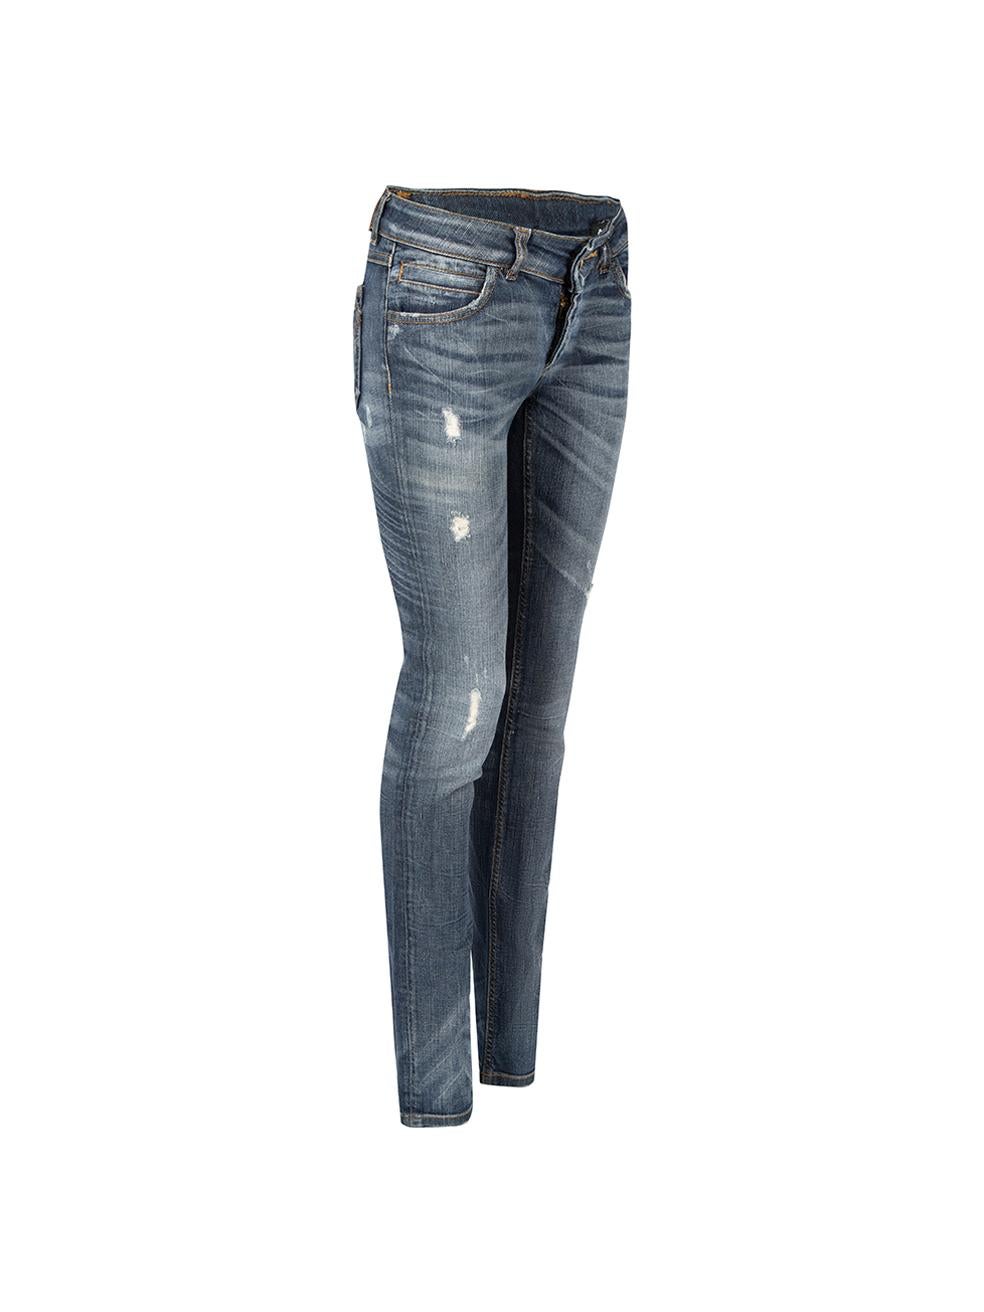 CONDIT ist sehr gut. Kaum sichtbare Abnutzungserscheinungen an der Jeans sind bei diesem gebrauchten D&G Designer-Wiederverkaufsartikel zu erkennen.

Einzelheiten
Blau
Baumwoll-Denim
Jeans
Skinny fit
Niedriger Anstieg
Distressed-Detail
3x